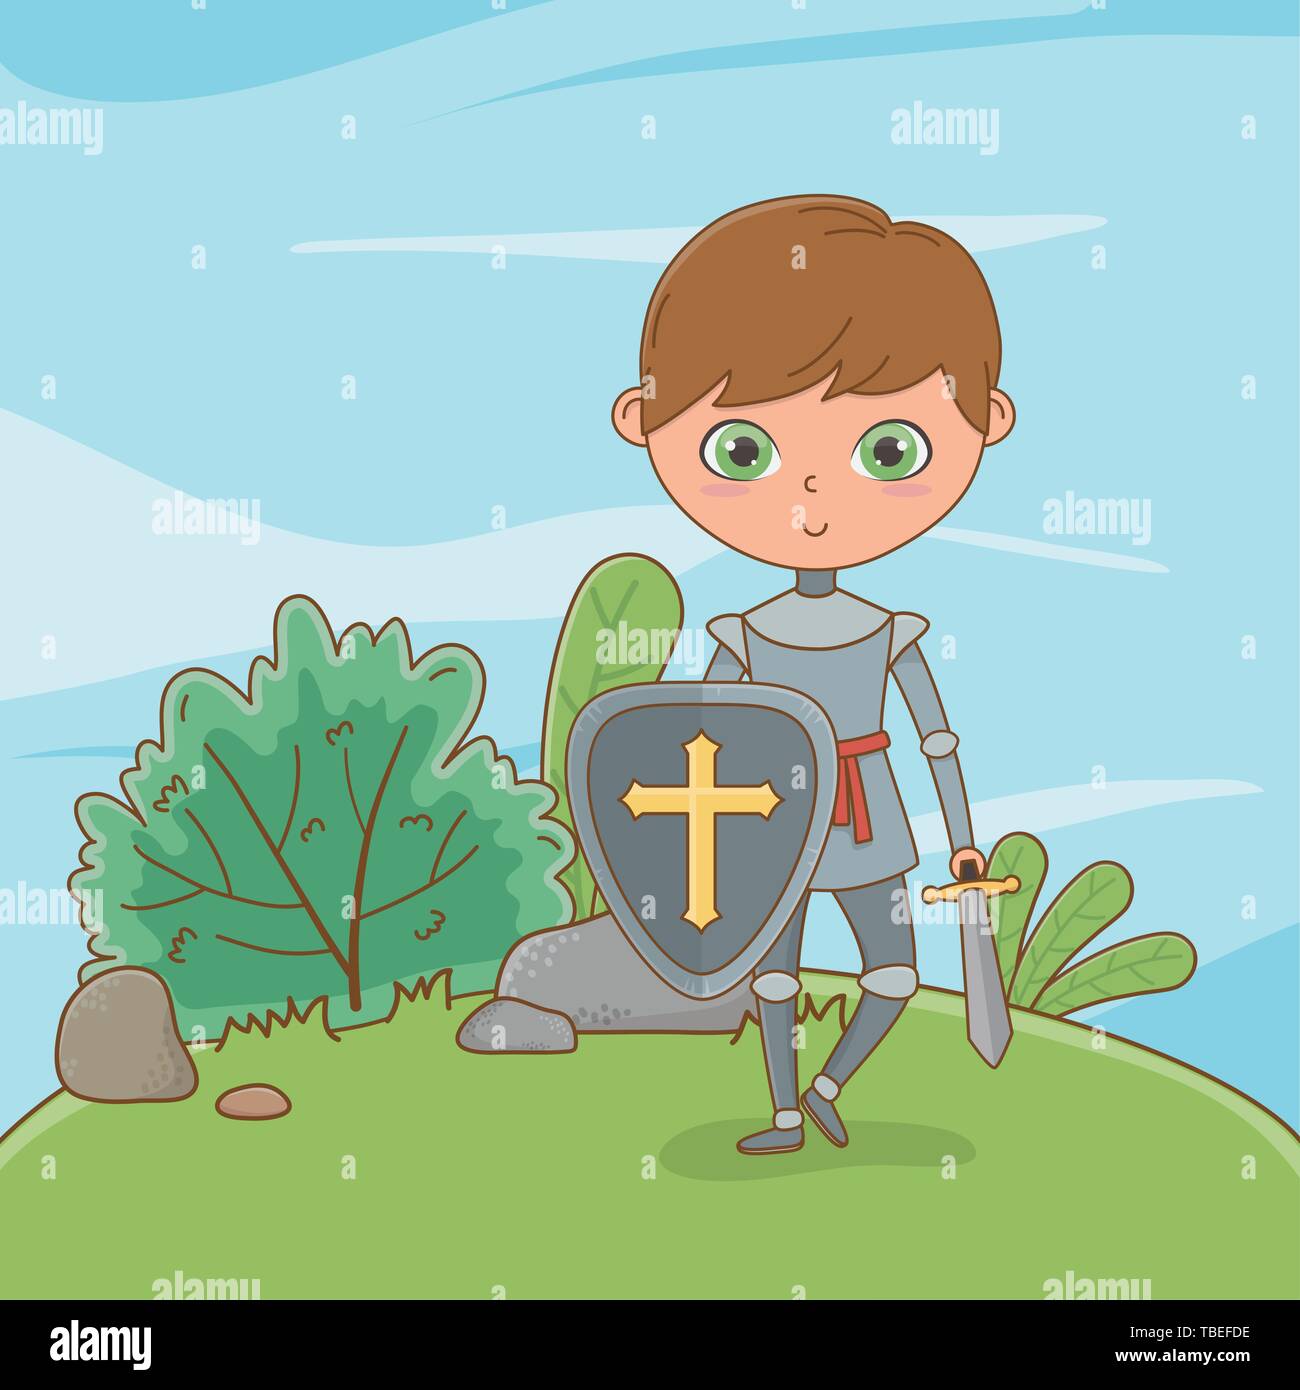 La conception, l'histoire de chevalier conte médiéval fantastique royaume  tale et story thème Vector illustration Image Vectorielle Stock - Alamy